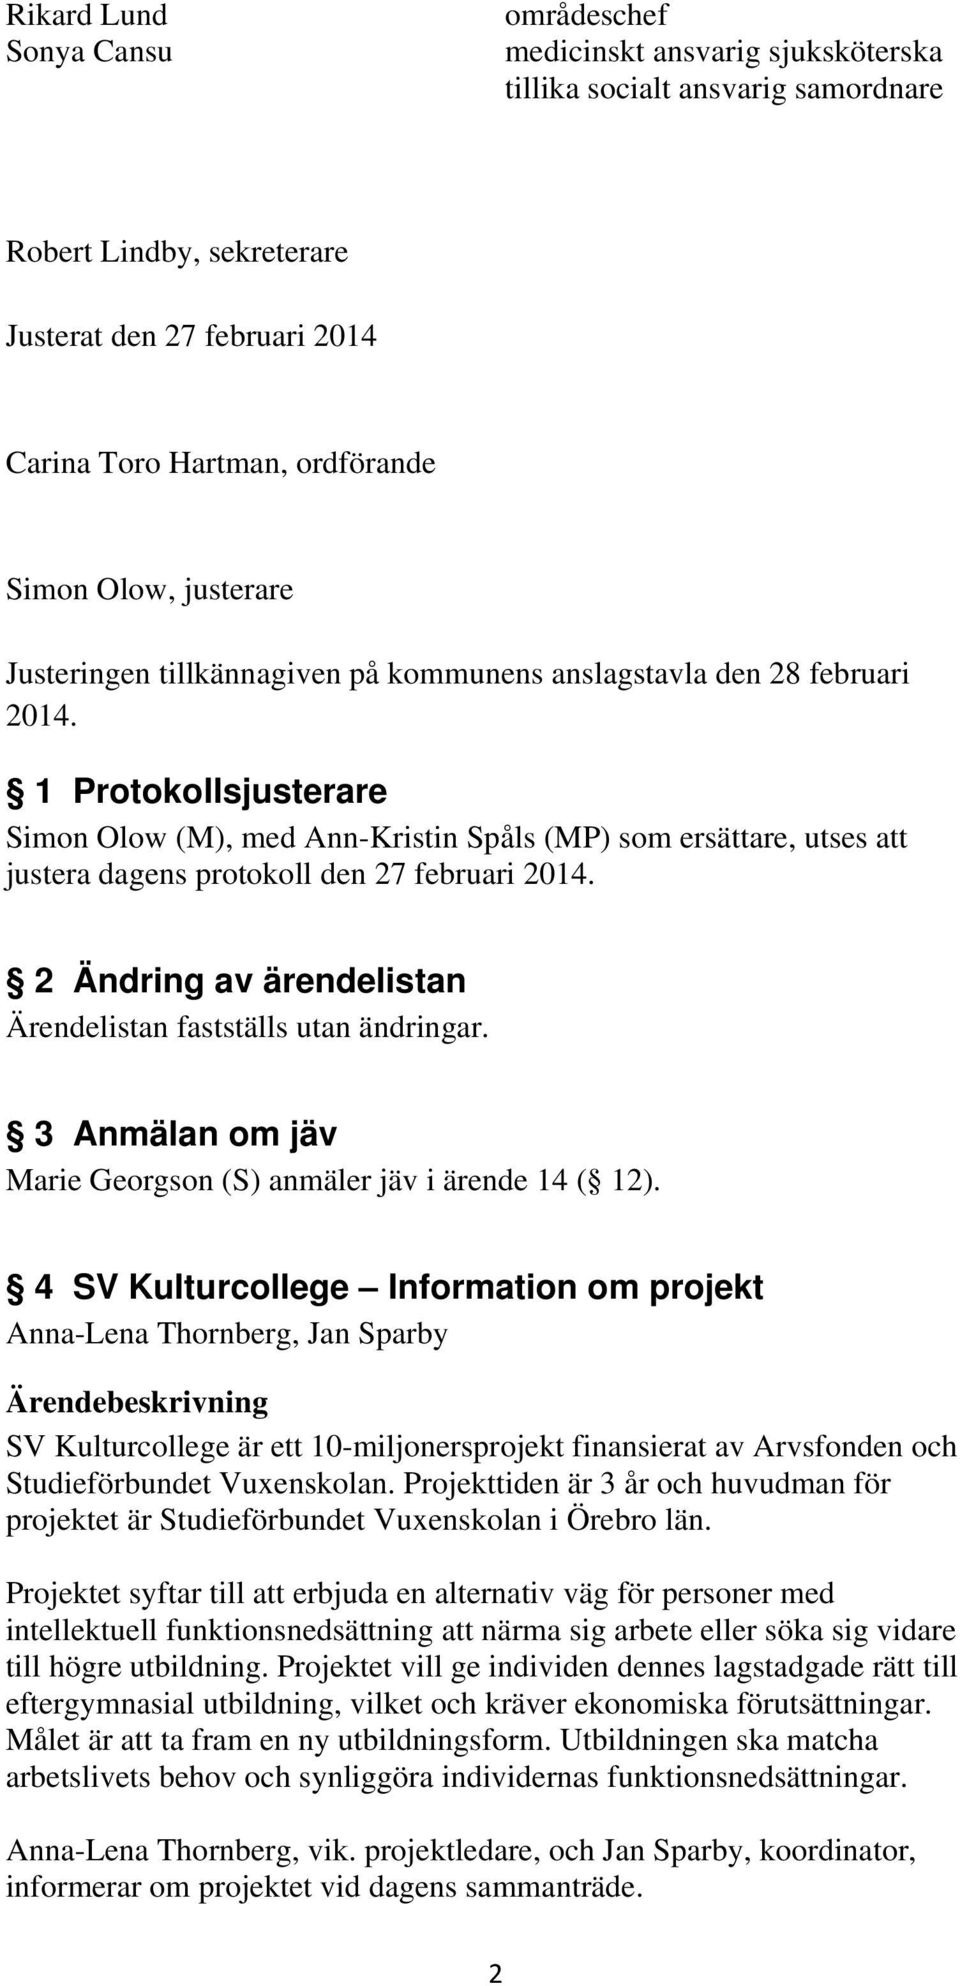 1 Protokollsjusterare Simon Olow (M), med Ann-Kristin Spåls (MP) som ersättare, utses att justera dagens protokoll den 27 februari 2014.